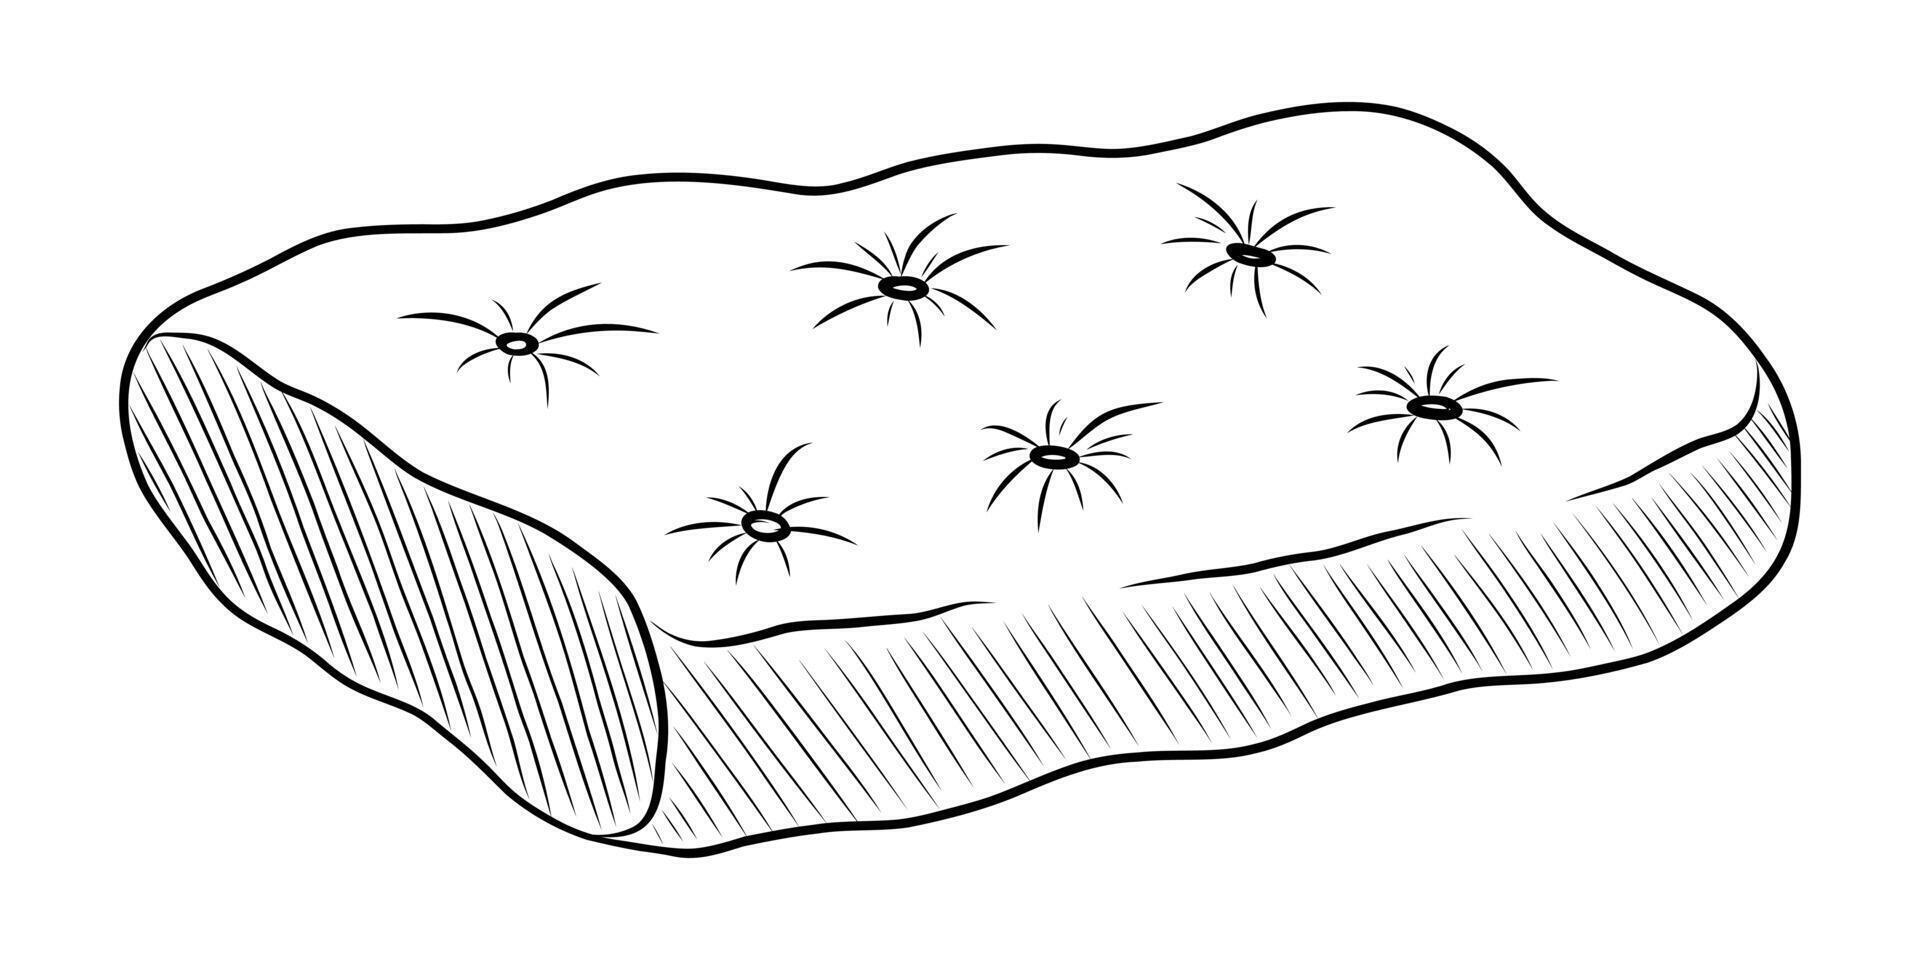 zwart en wit vector tekening van een bed voor een huisdier